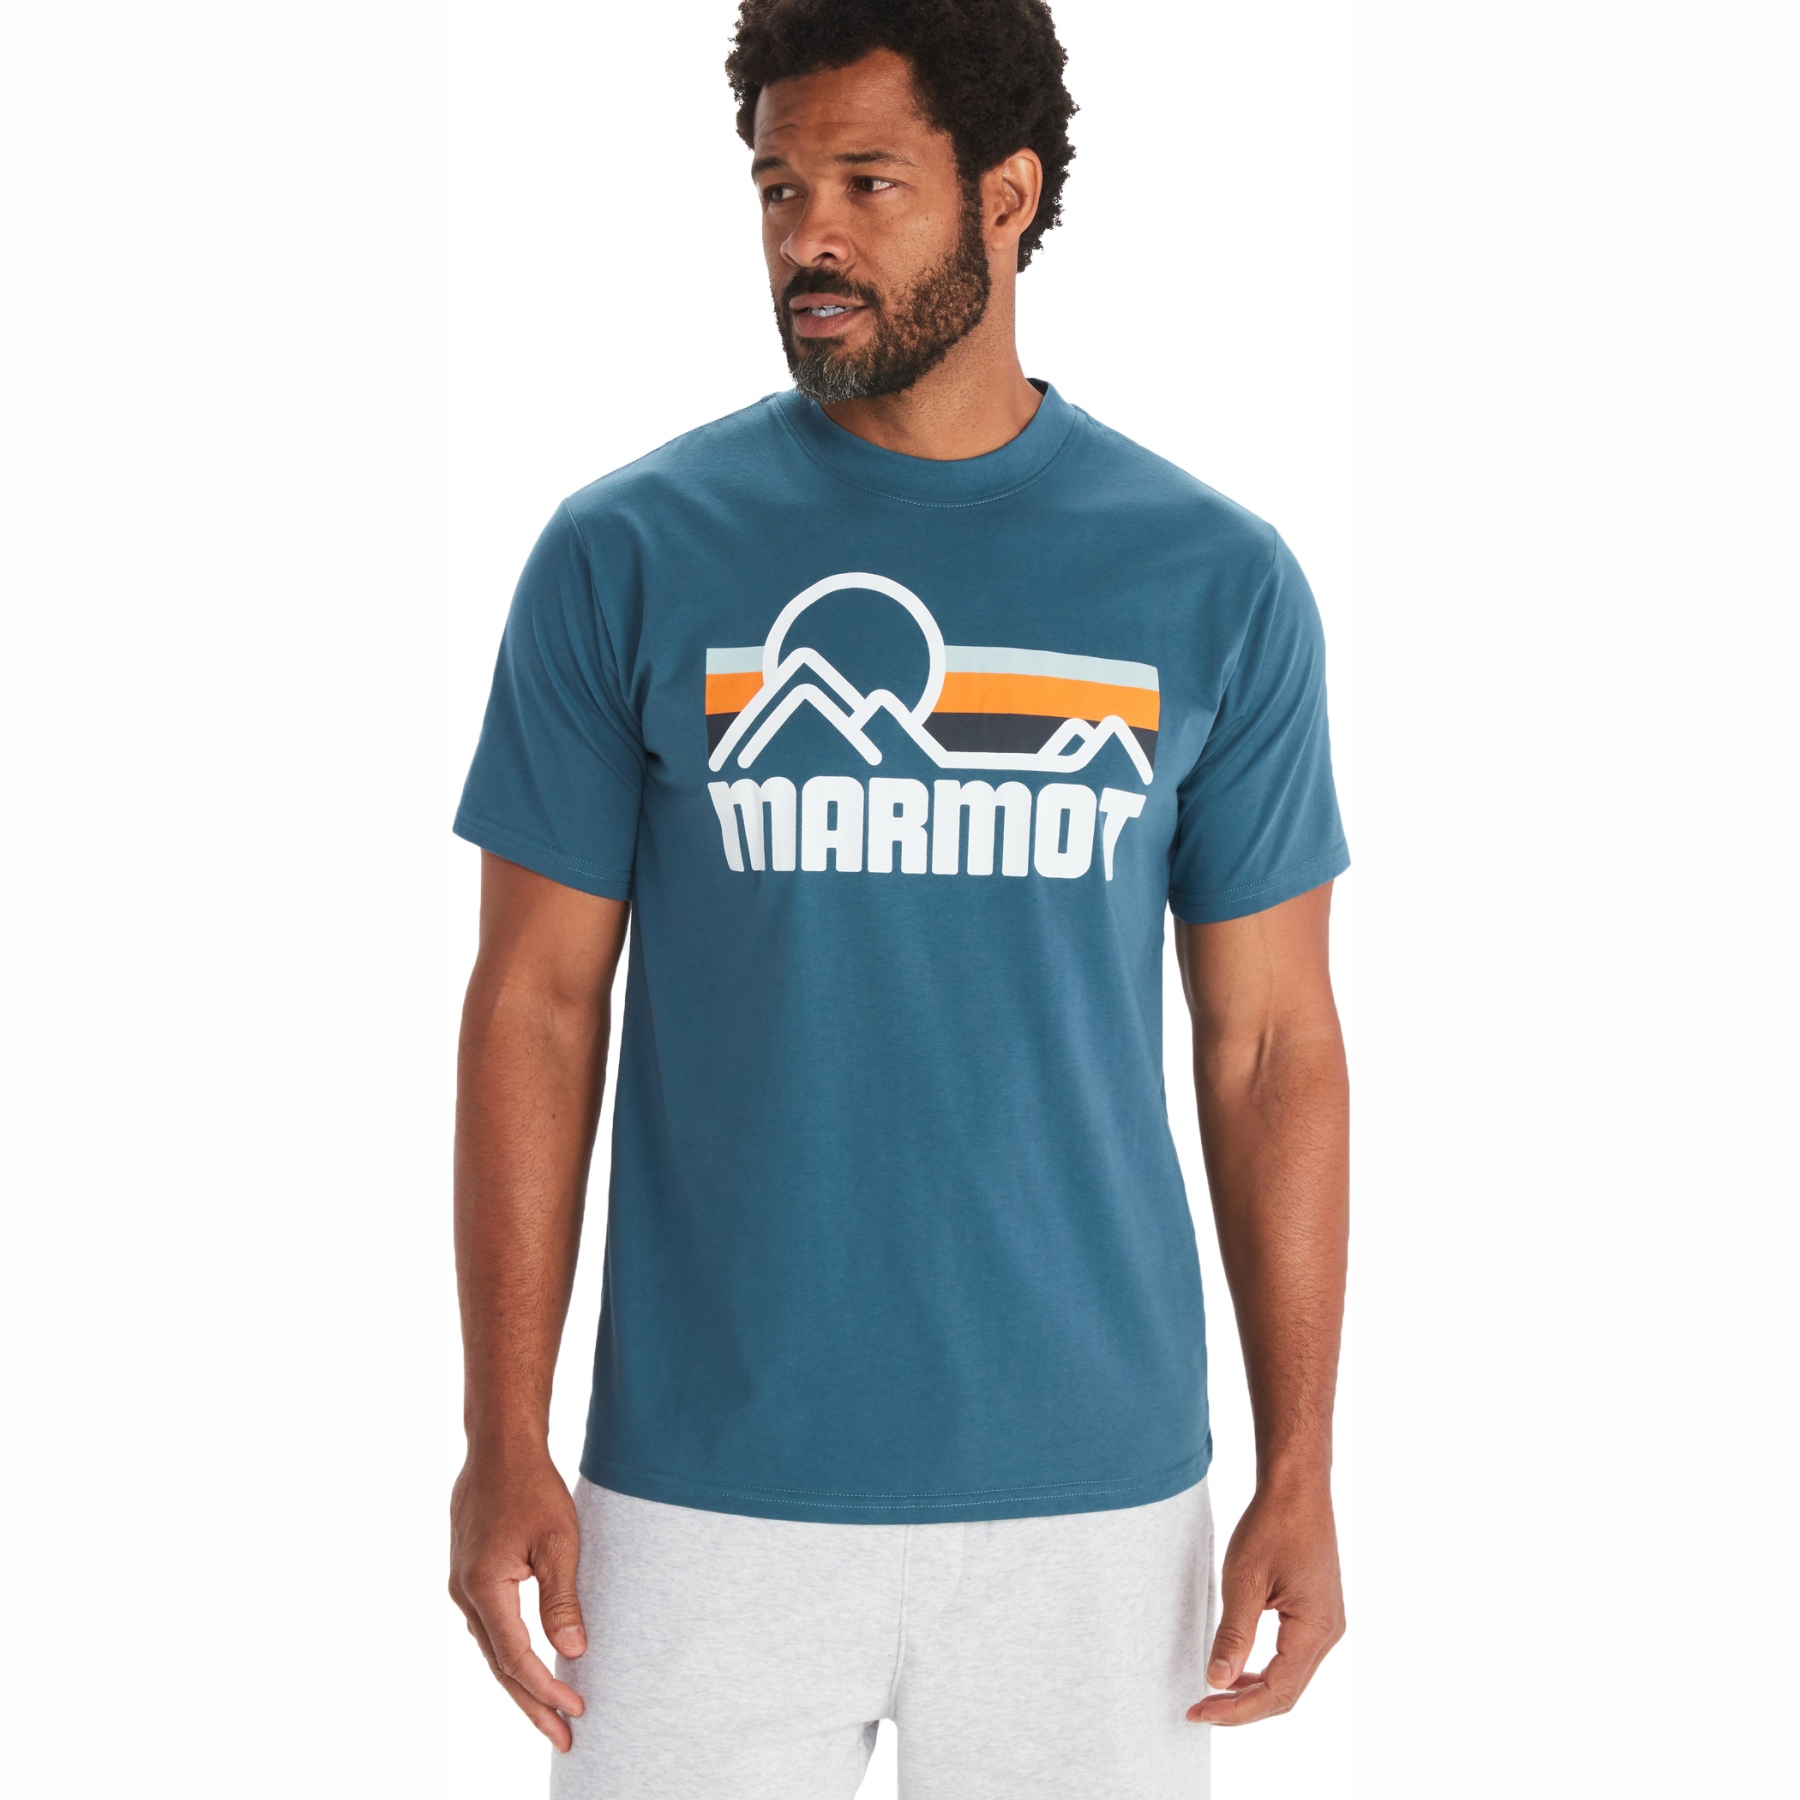 Produktbild von Marmot Coastal T-Shirt Herren - dusty teal